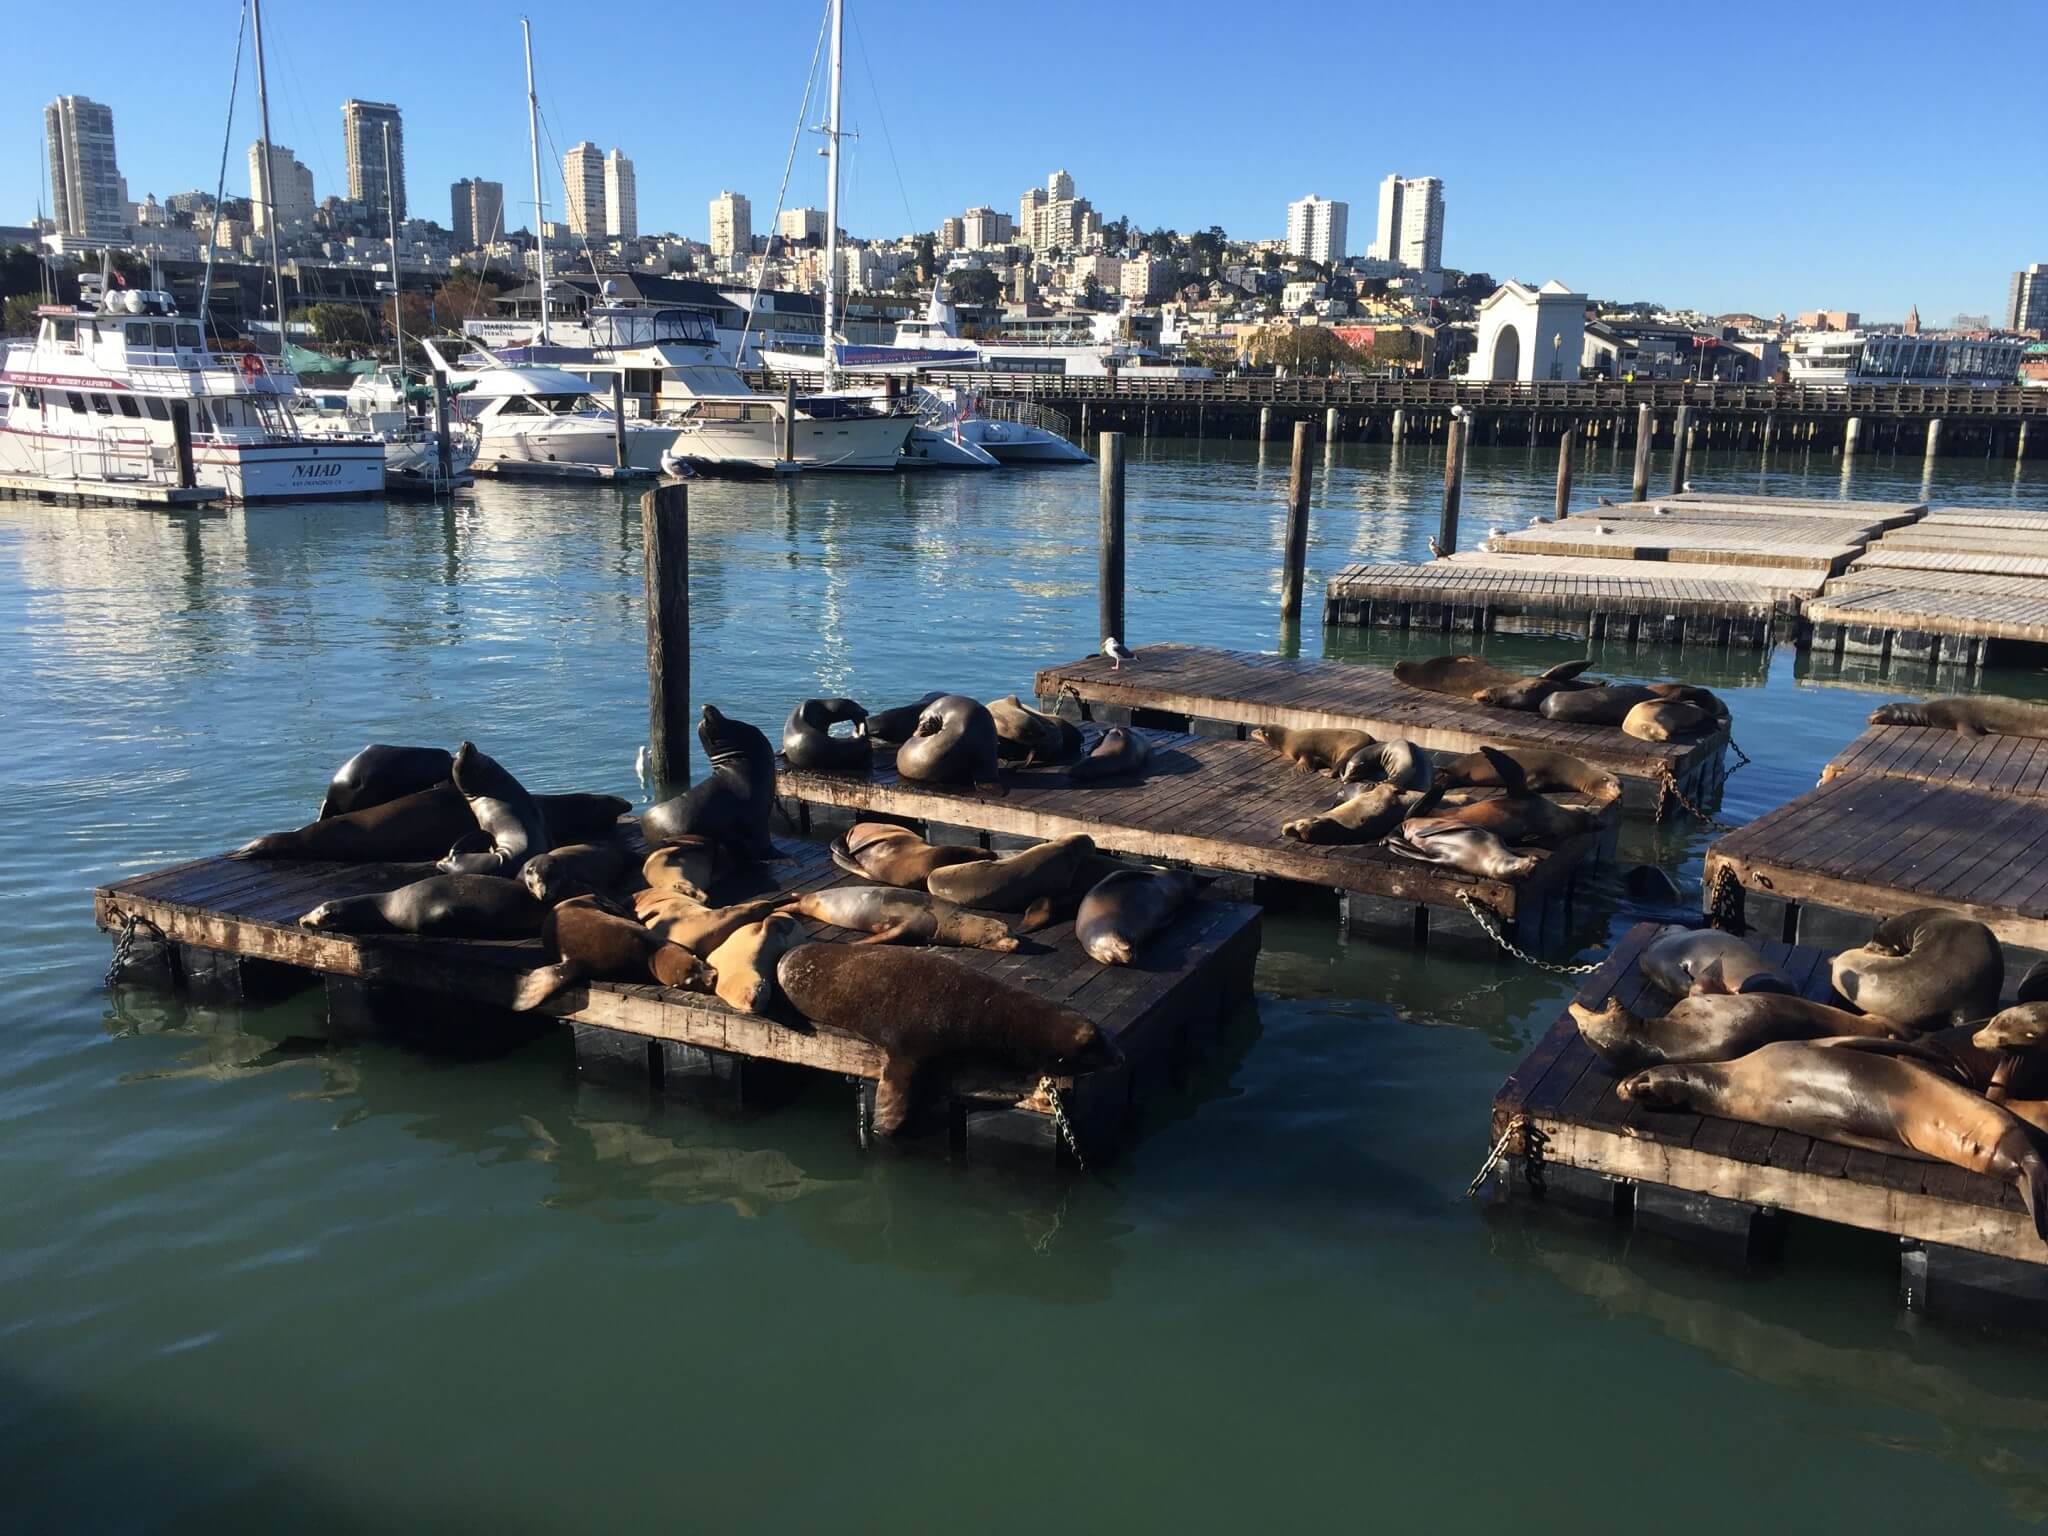 Søløverne nyder solen i San Franciscos indre havn. Og vi nyder dem.